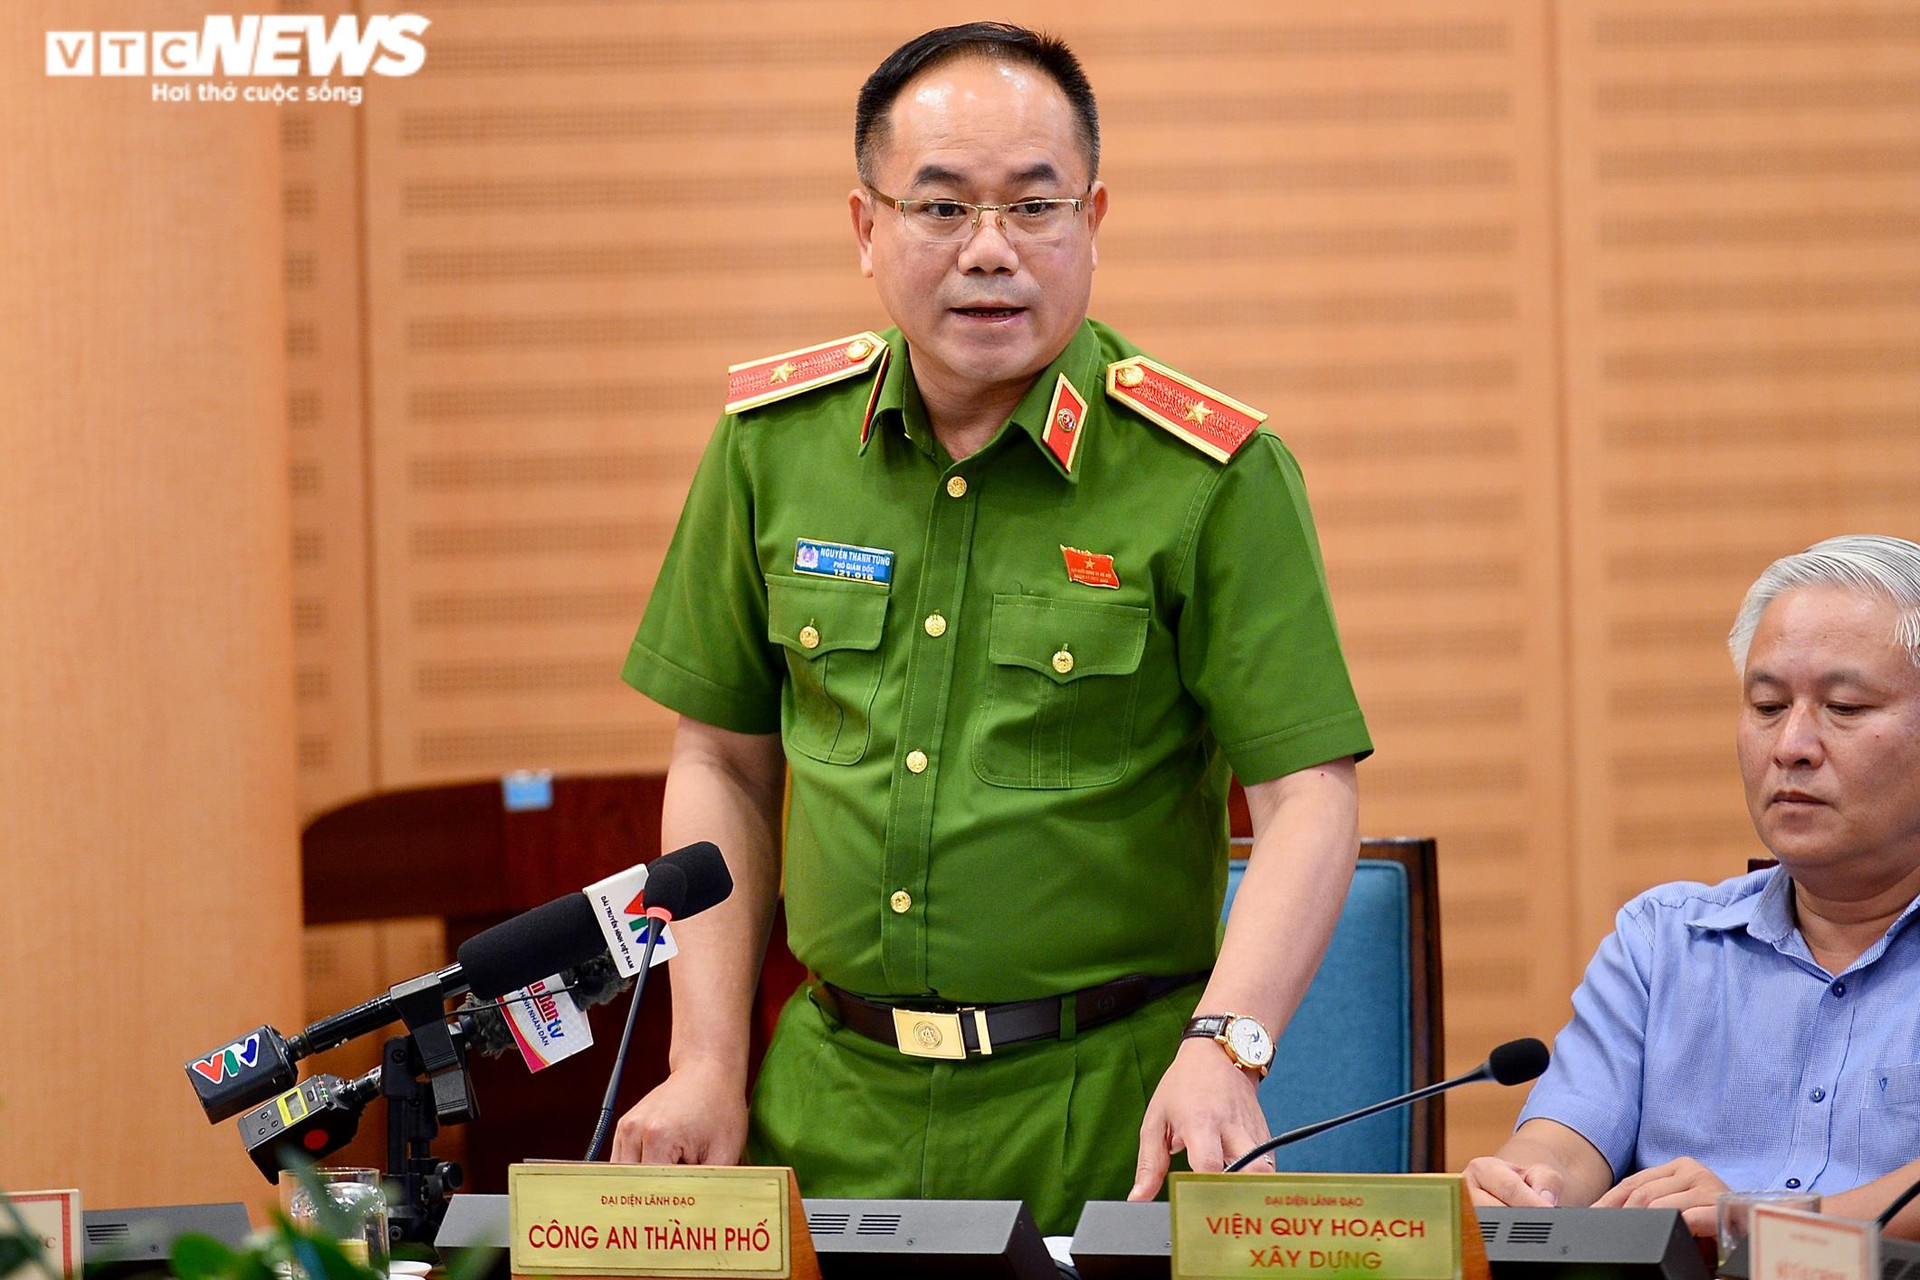 Giám đốc CDC Hà Nội và thuộc cấp nhận 1,1 tỷ đồng của Việt Á - 1